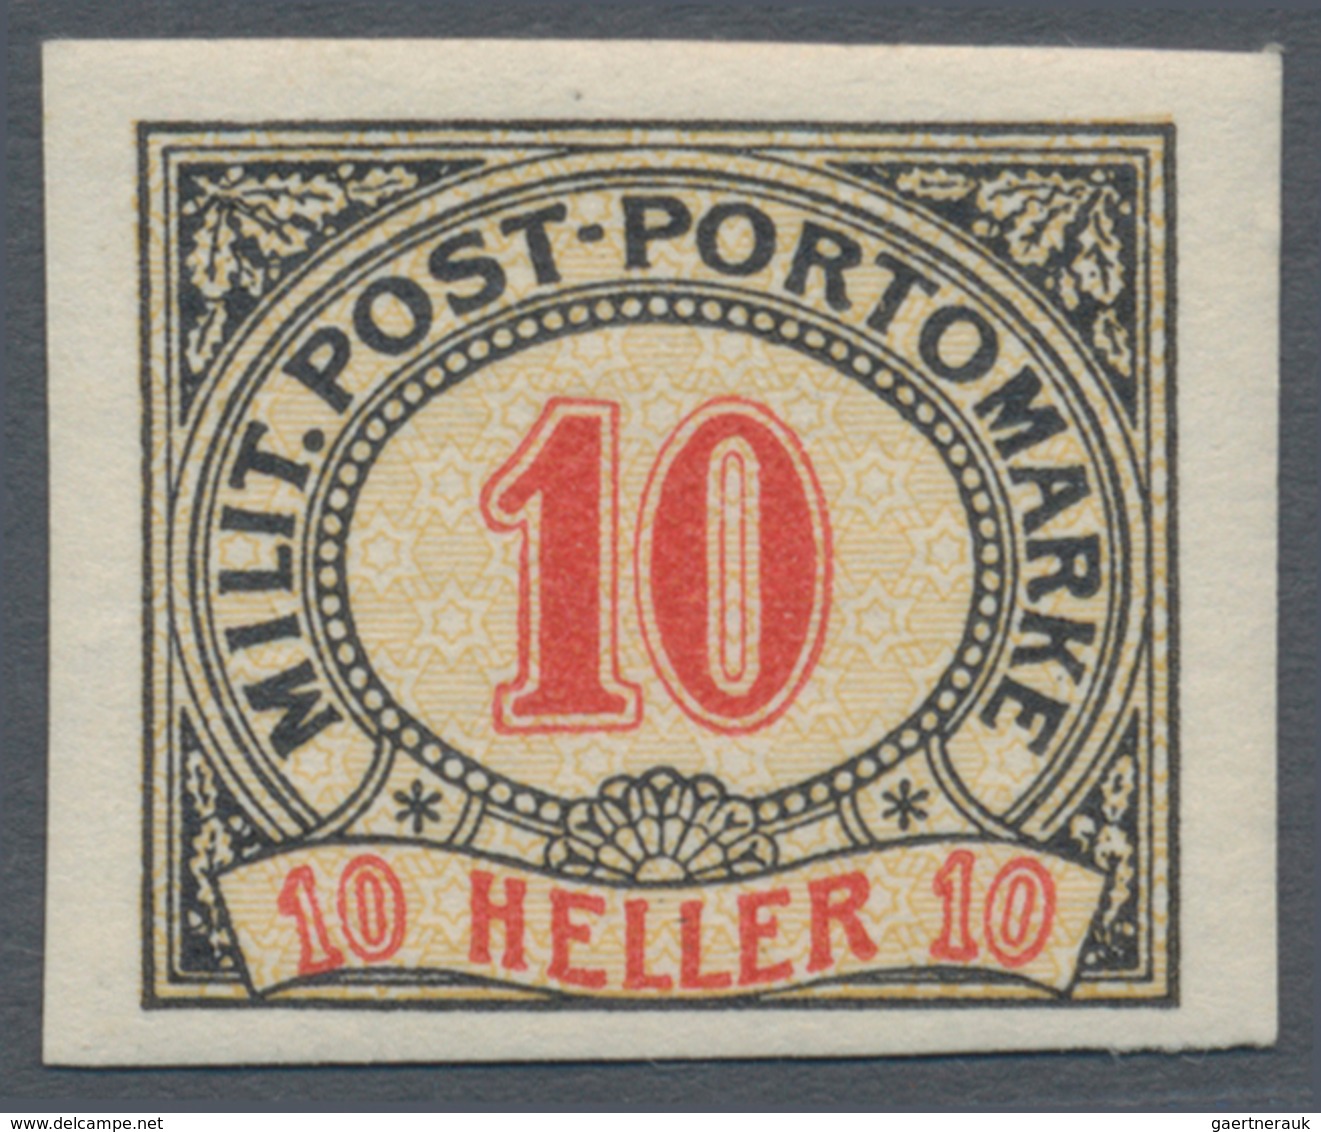 Bosnien und Herzegowina (Österreich 1879/1918): 1904, Ziffern-Portomarken 1 H bis 200 H kompletter U